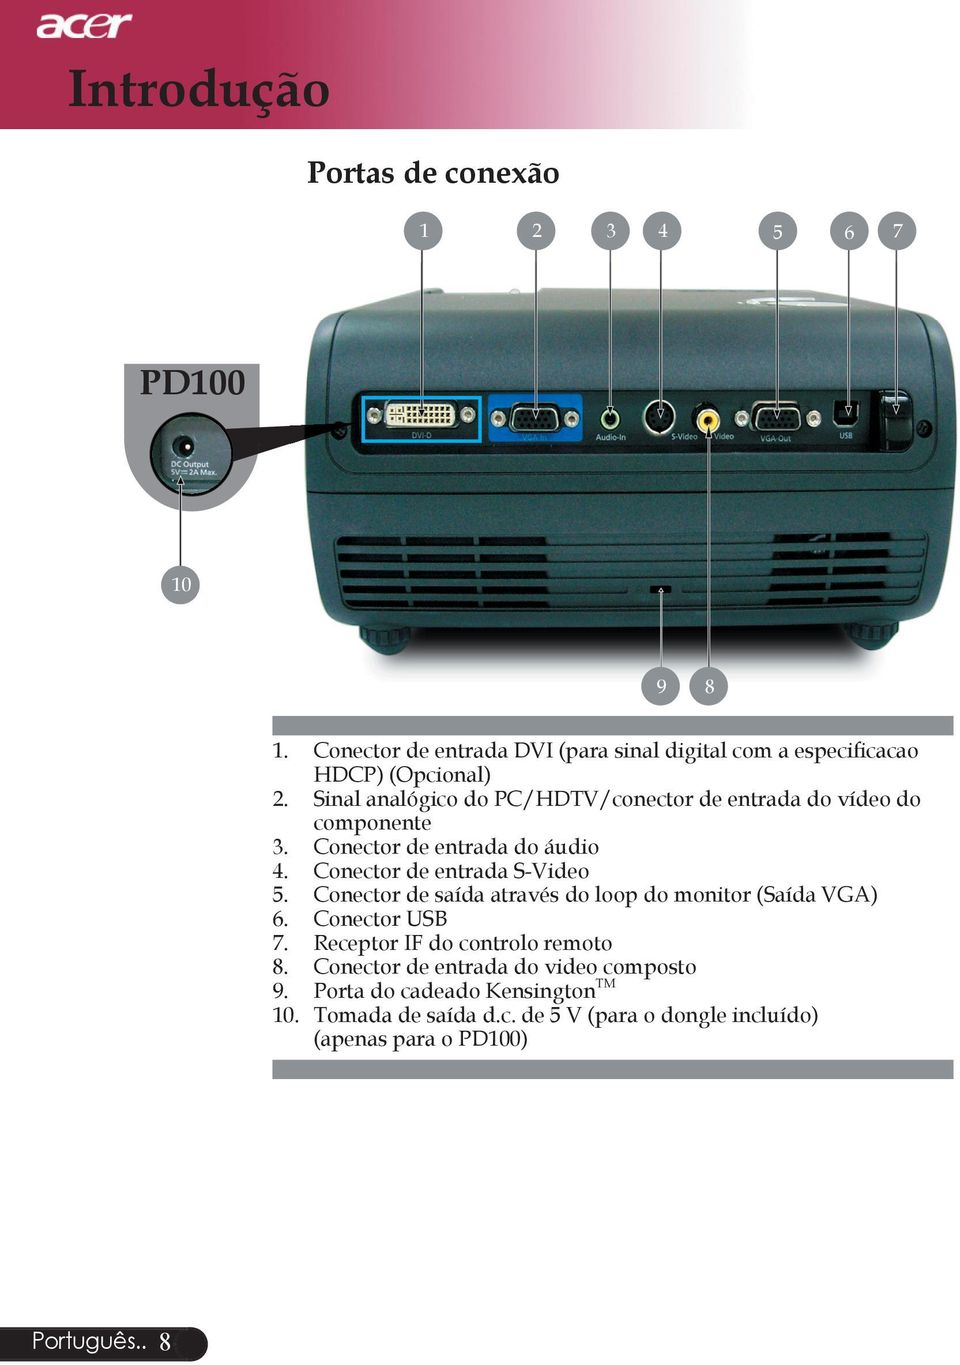 Sinal analógico do PC/HDTV/conector de entrada do vídeo do componente 3. Conector de entrada do áudio 4. Conector de entrada S-Video 5.